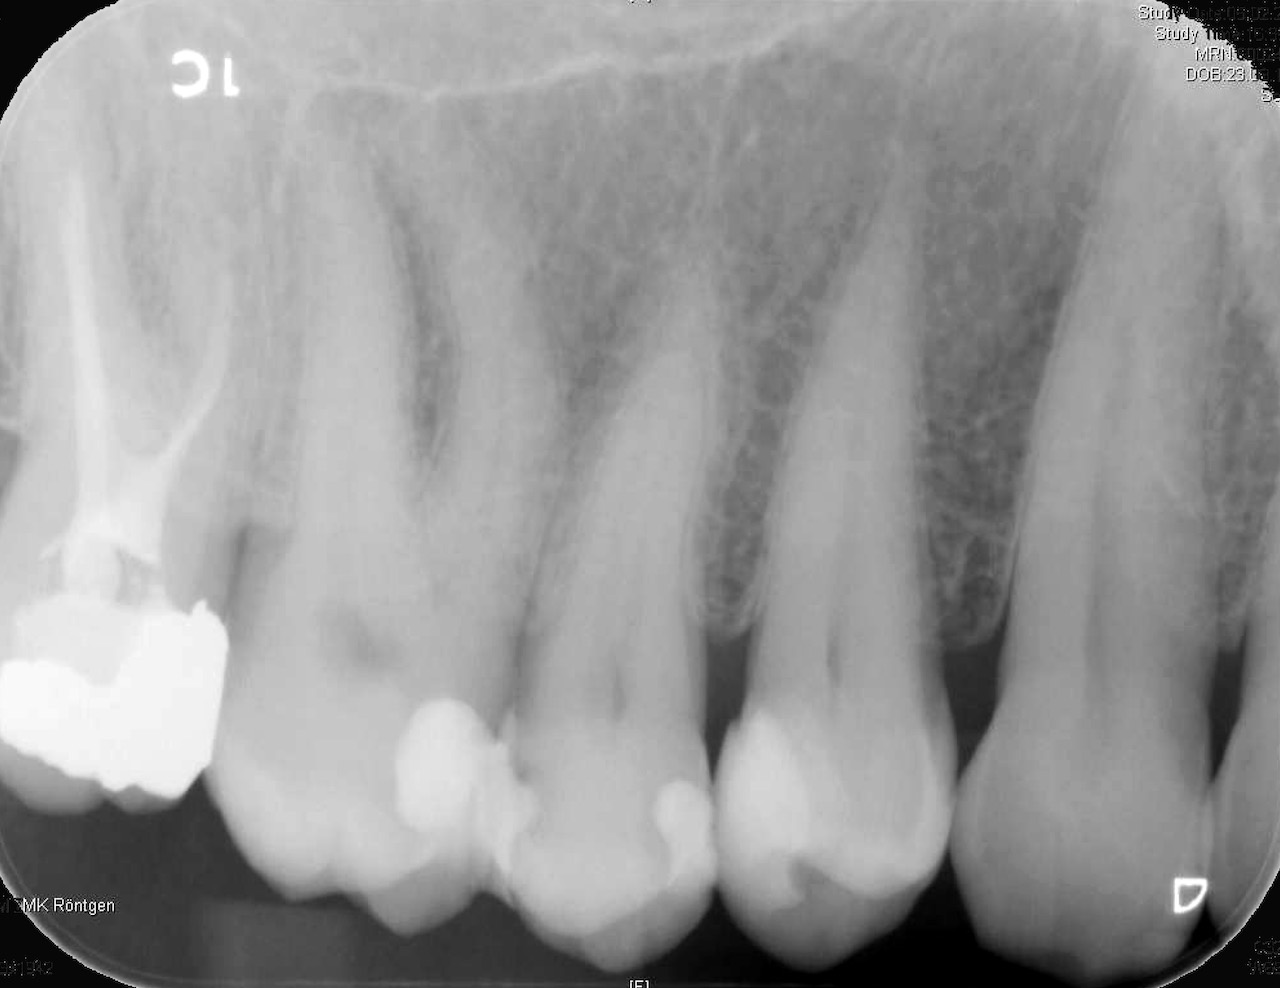 Abb. 11: Der Zahnfilm, aufgenommen 6,5 Jahre nach direkter Überkappung, zeigt keine pathologischen Veränderungen apikal an Zahn 14. Ein Nachteil von Biodentine wird auf dieser Aufnahme jedoch deutlich: die Röntgenopazität des Zements ist ähnlich der von Dentin, so dass die Schicht Biodentine unter der gut sichtbaren Kompositrestauration kaum vom Zahnhartgewebe zu unterscheiden ist.